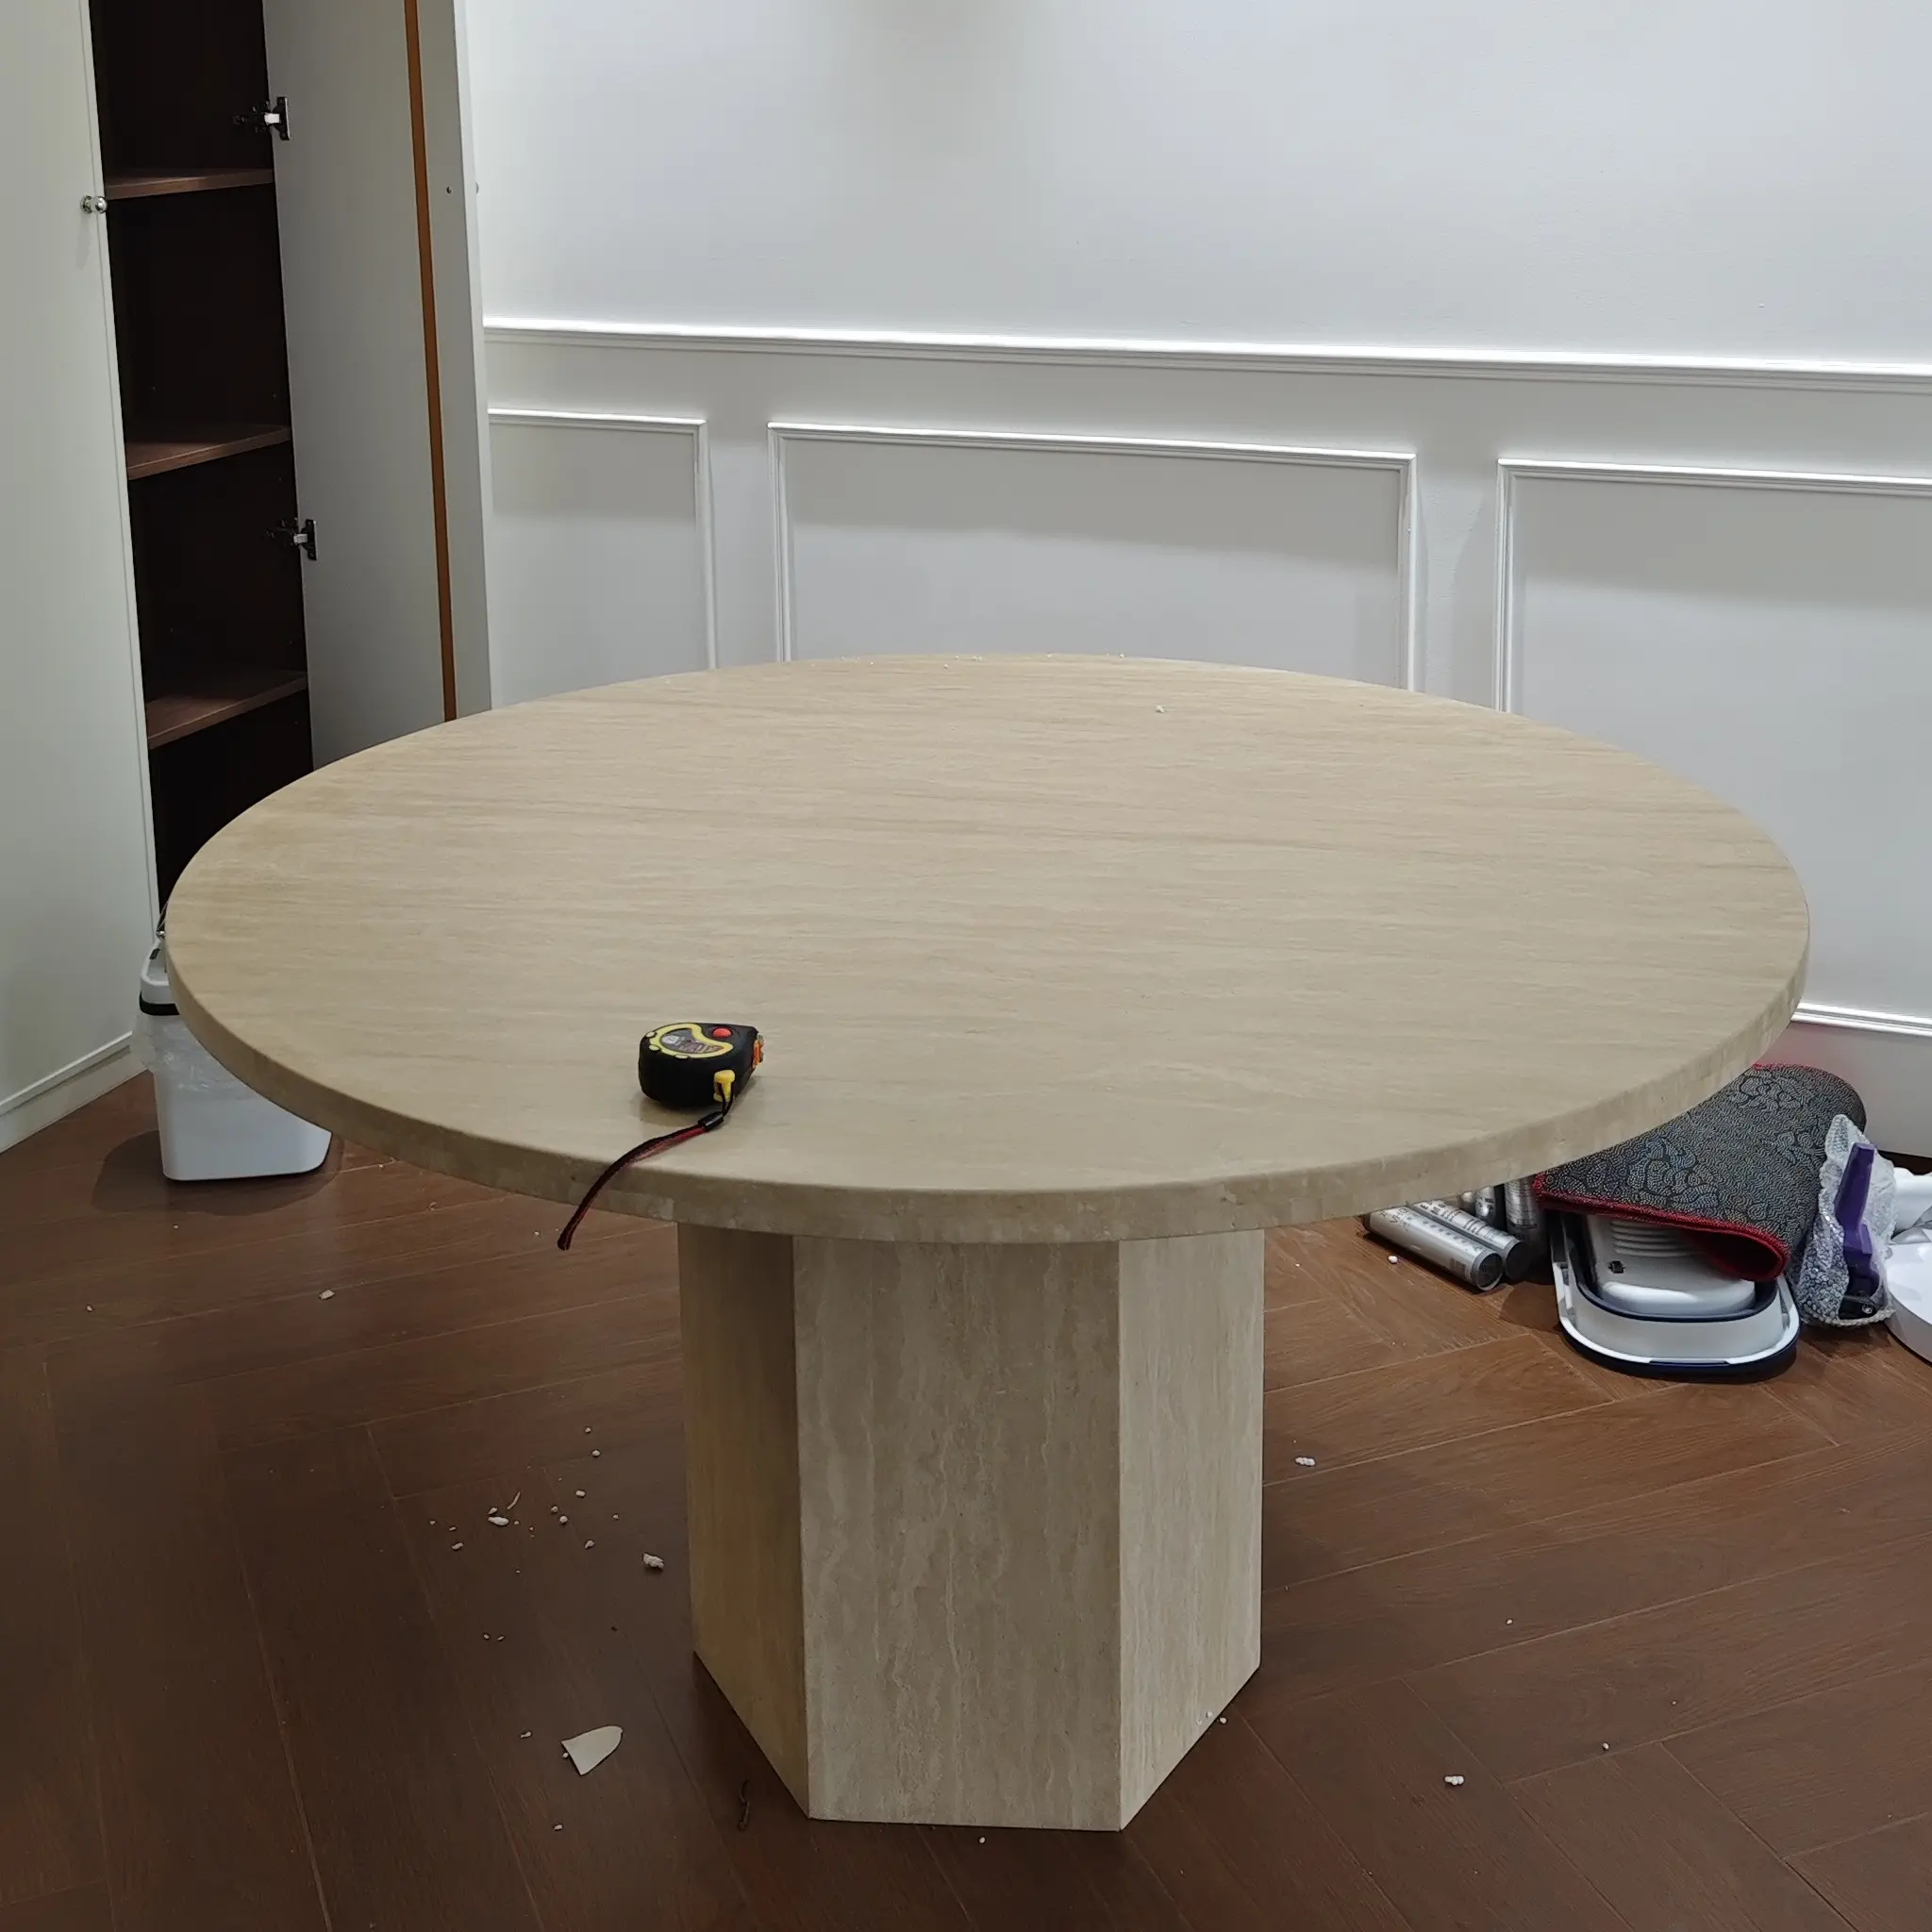 ריהוט אבן שולחן שיש טבעי רגליים משושה סוג בז' טרוורטין שיש שולחן קפה לפינת אוכל